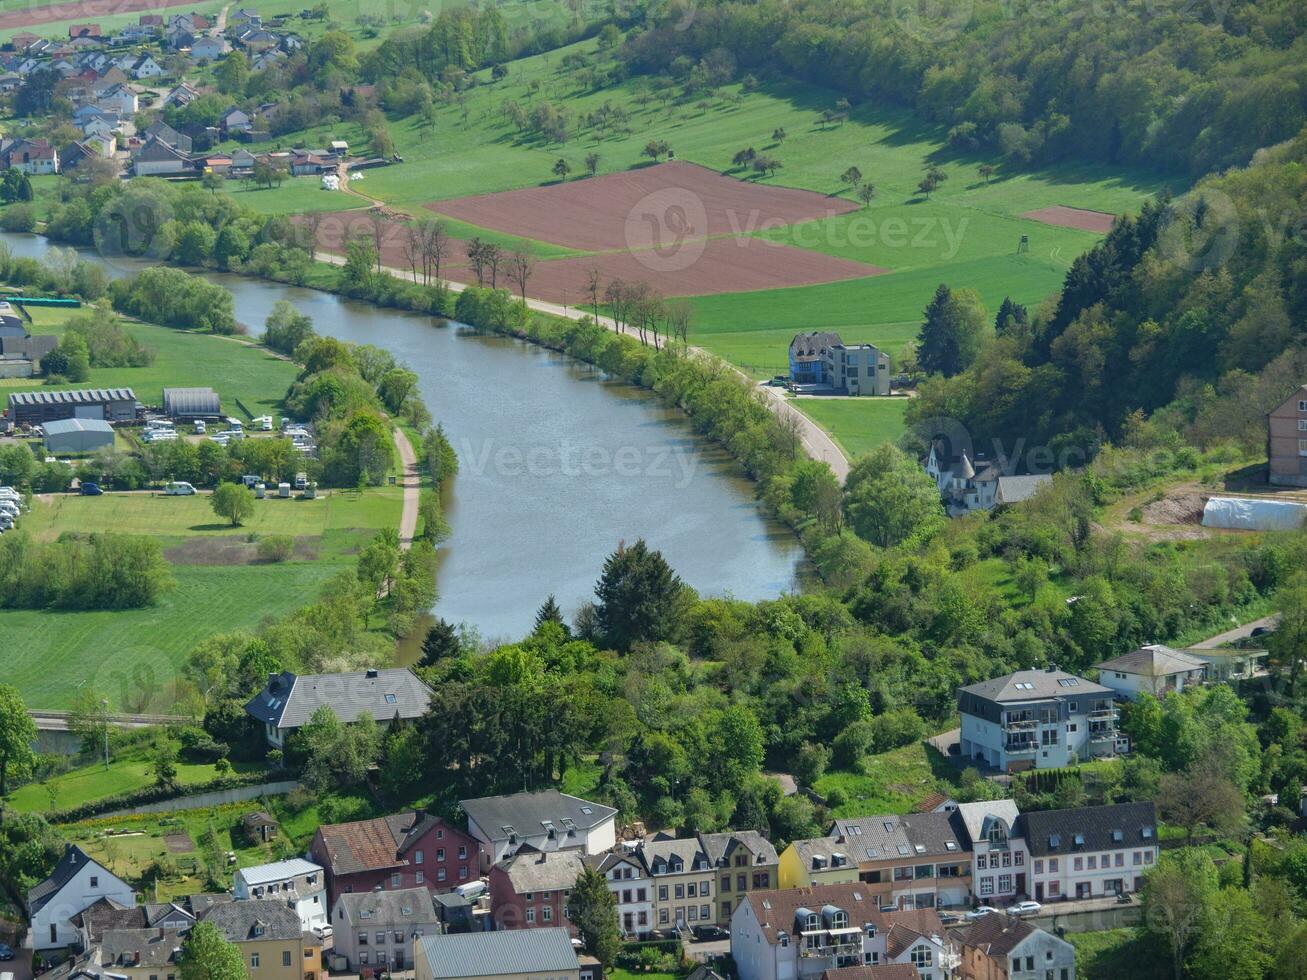 el pequeño ciudad de saarburg a el Sarre río en Alemania foto